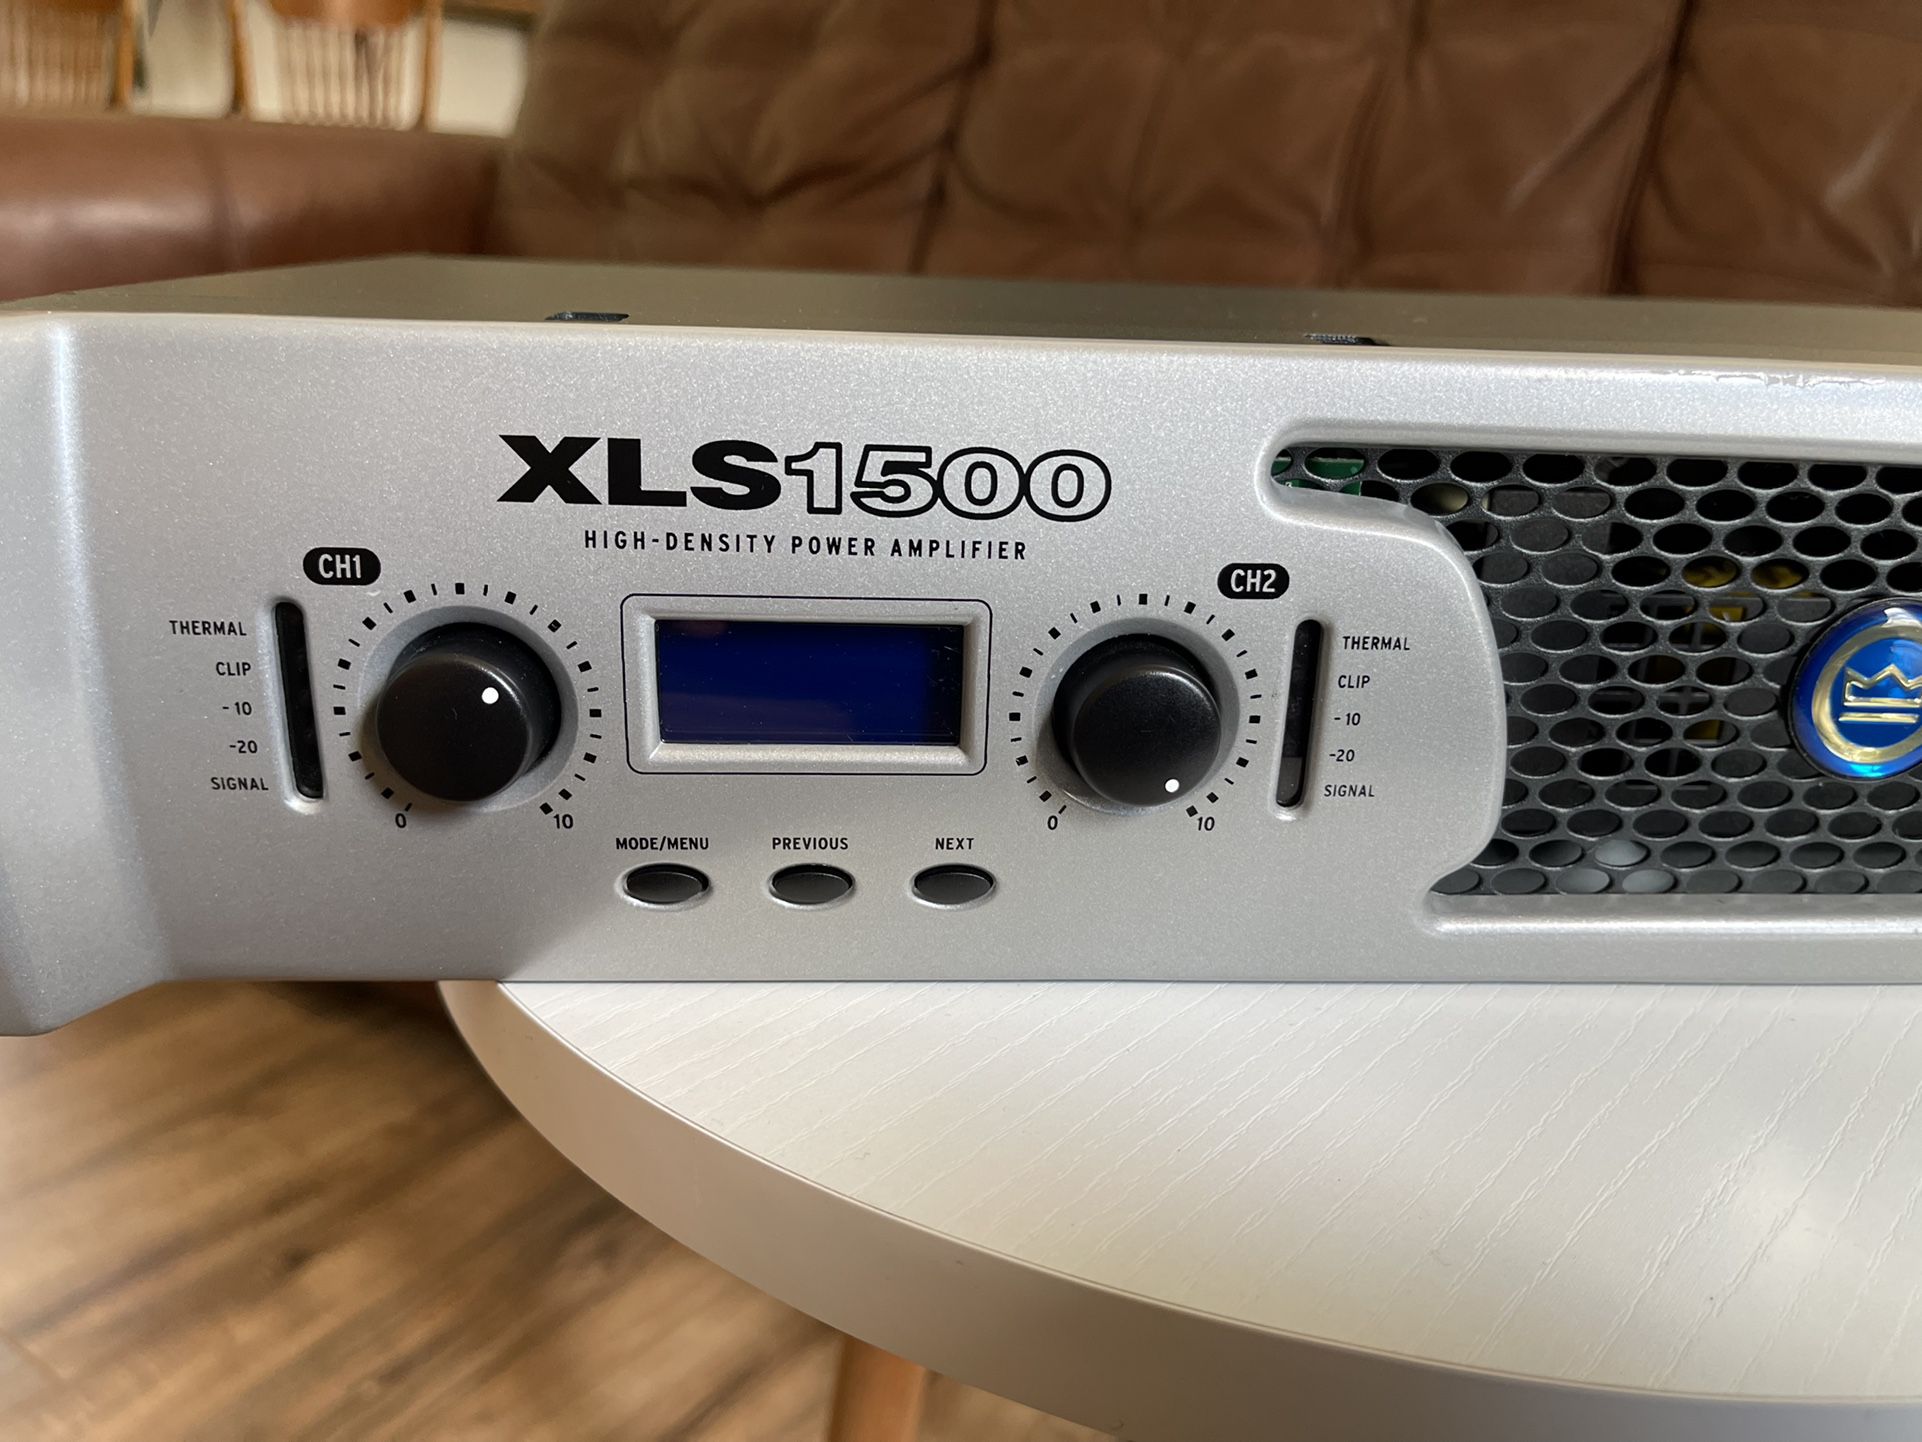 XLS1500 High-Density Power amplifier